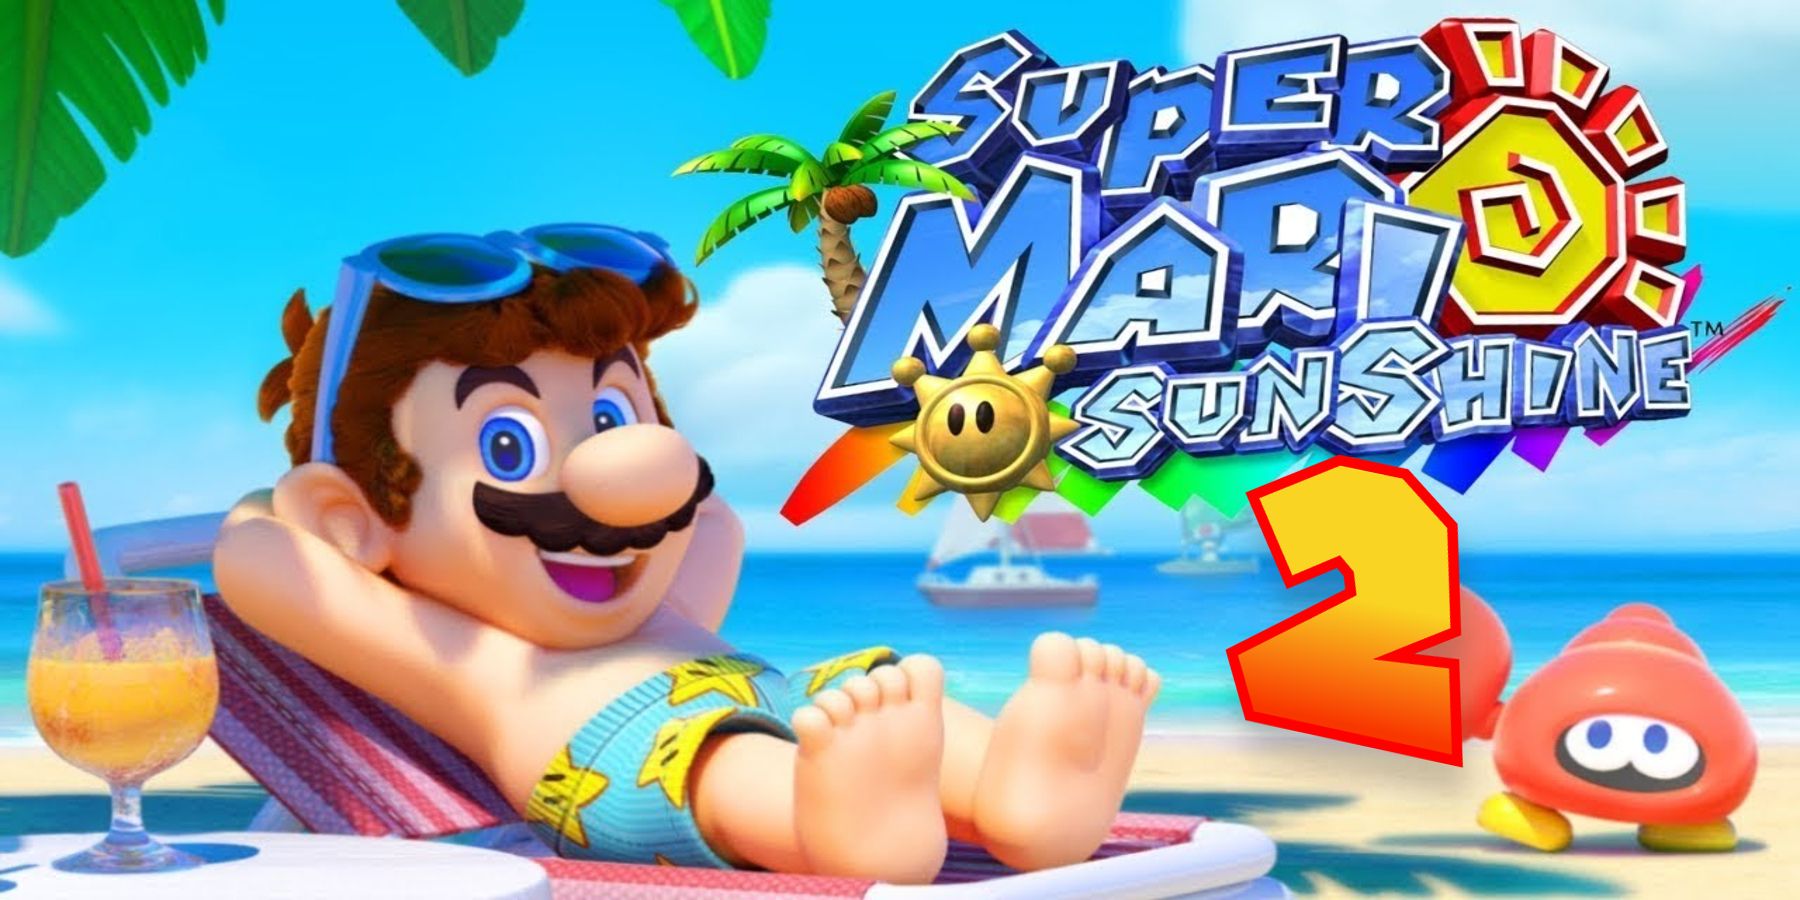 Super Mario Sunshine 2 